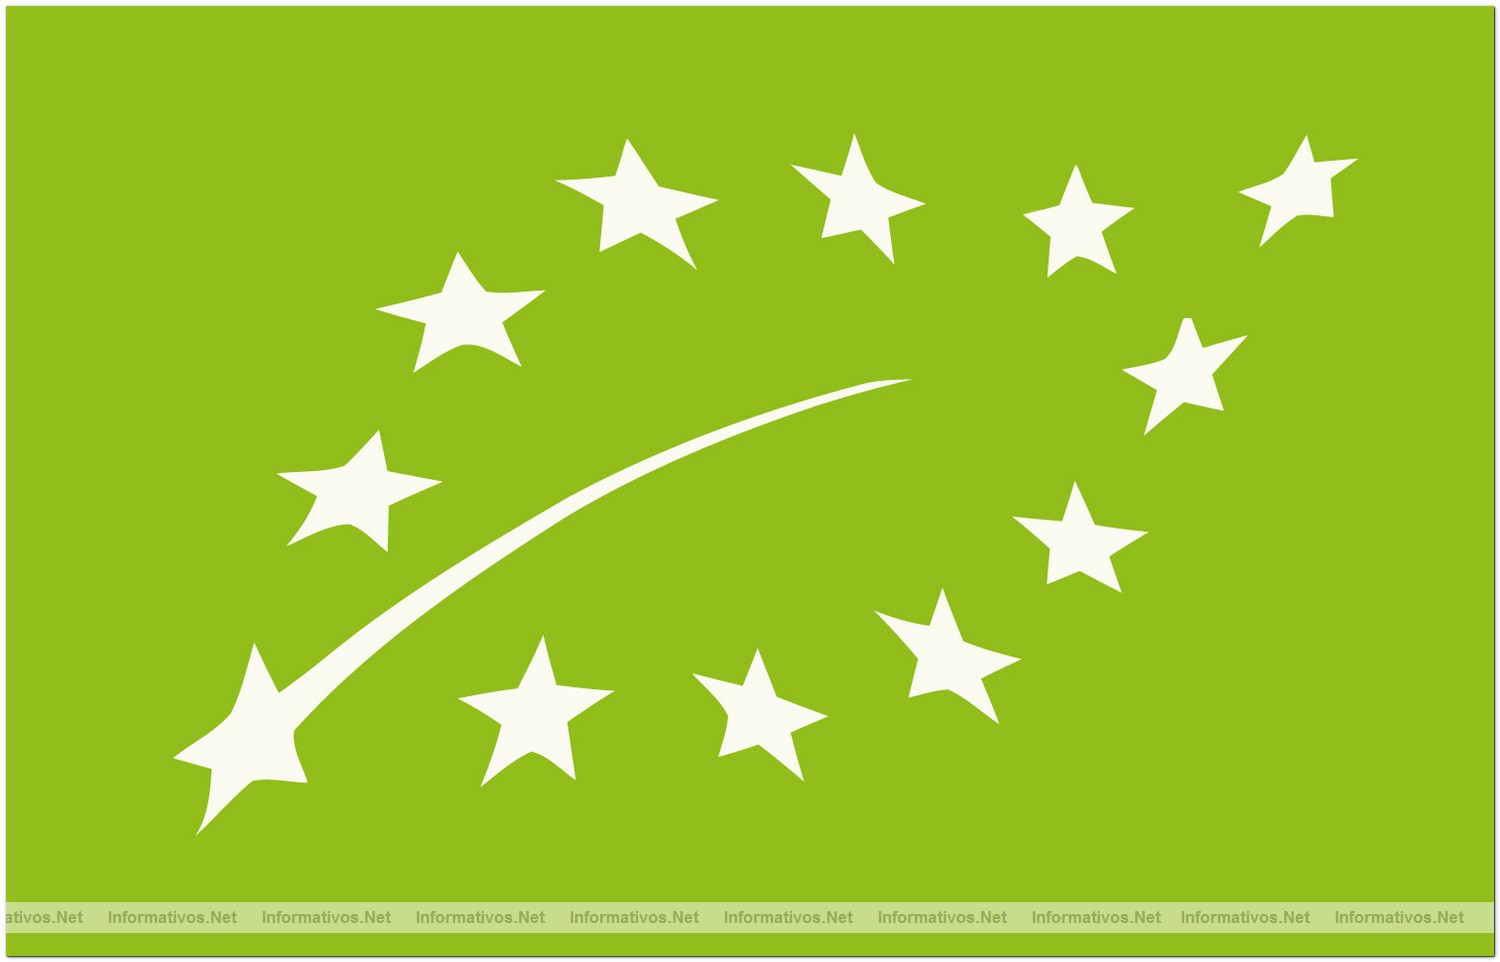 Nuevo logotipo de Agricultura Ecológica: 12 estrellas blancas de la Unión Europea que forman la silueta de una hoja sobre un fondo verde